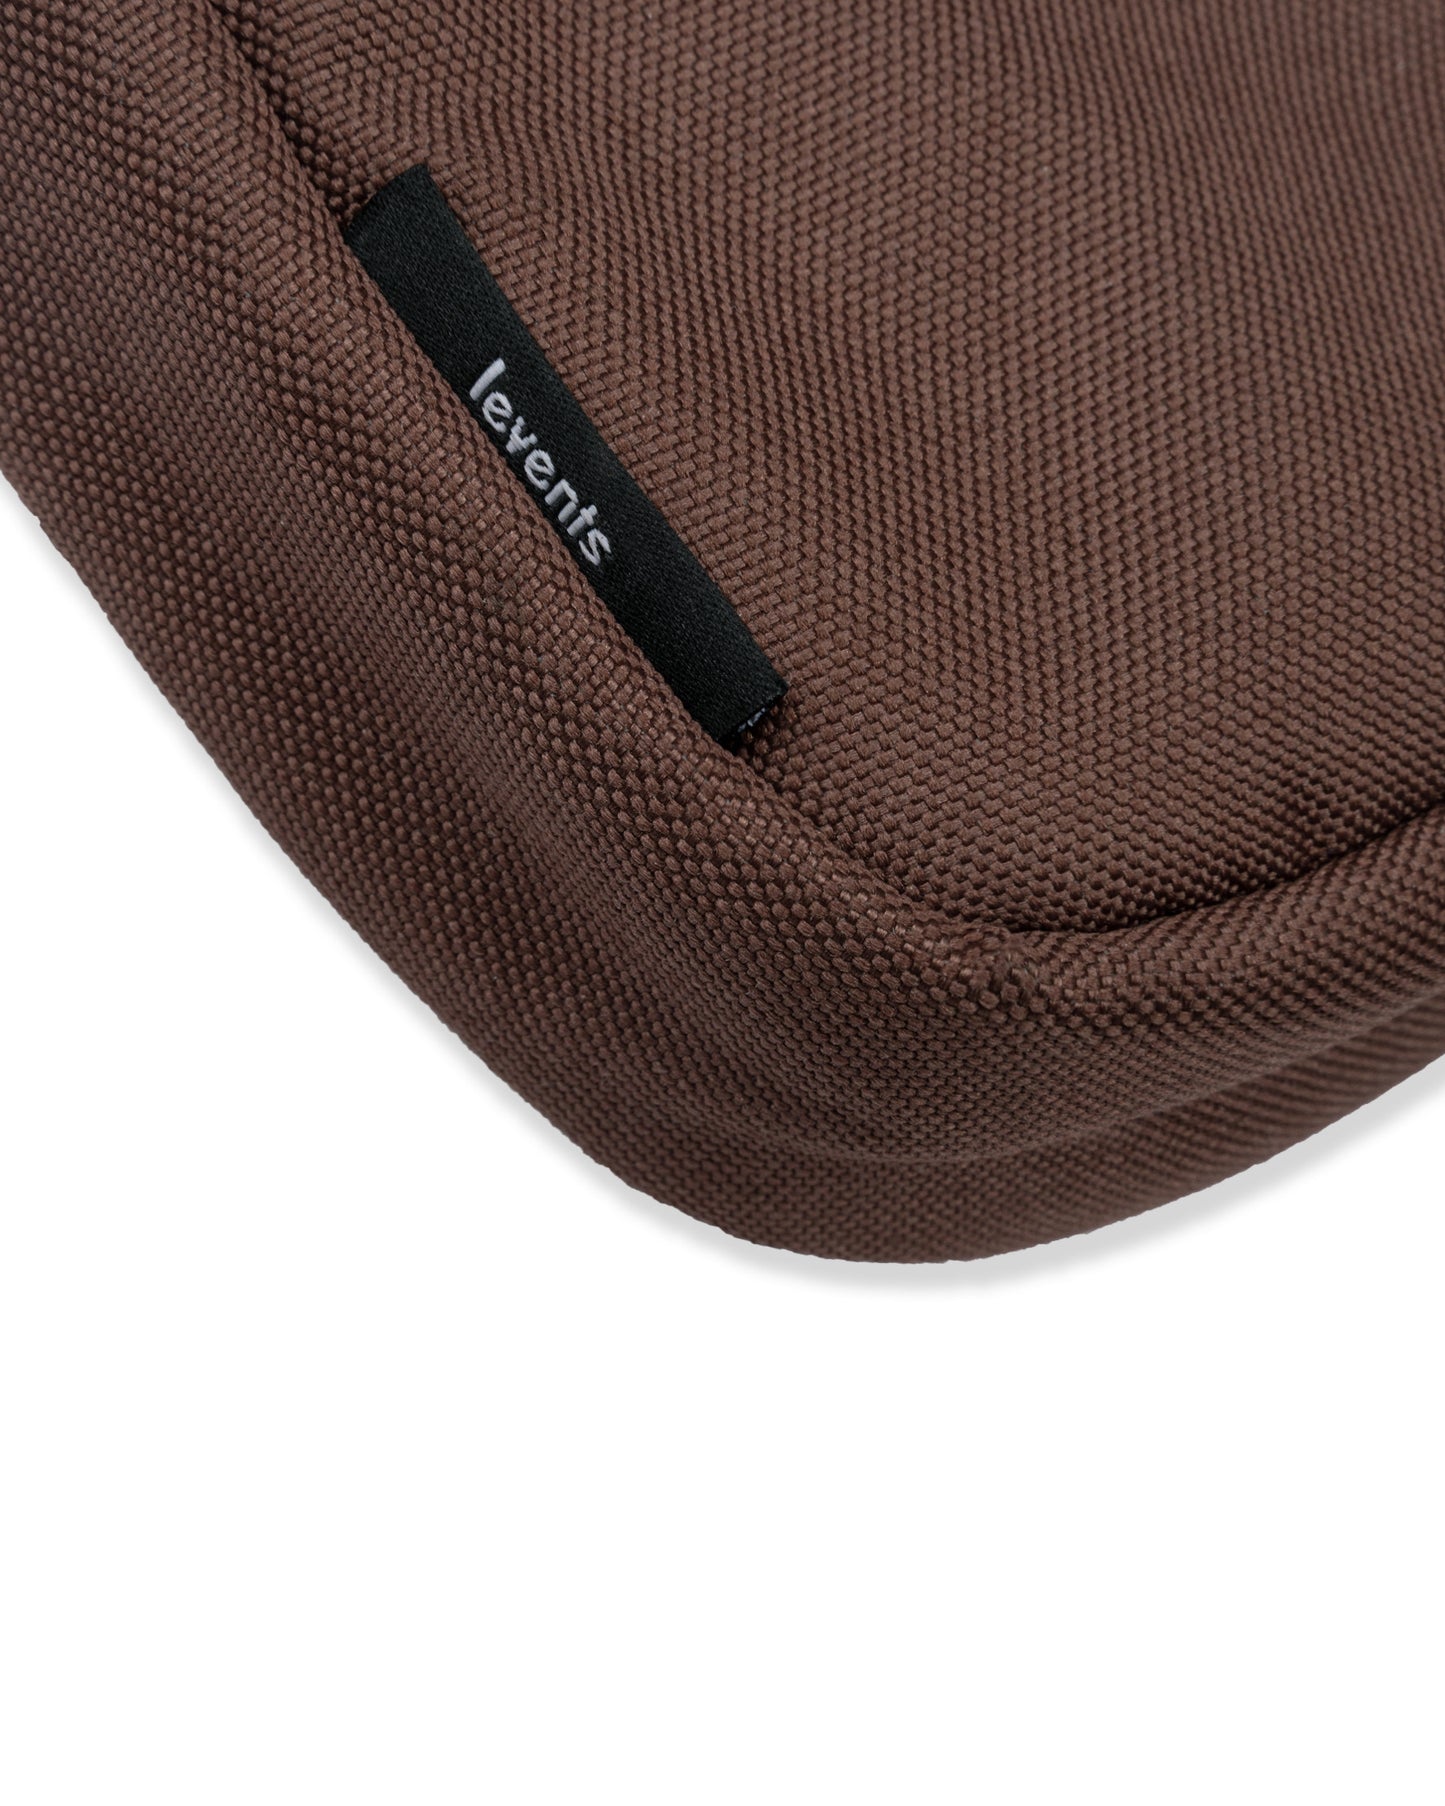 Levents® 2Tone Mini Shoulder Bag/ Brown Cream